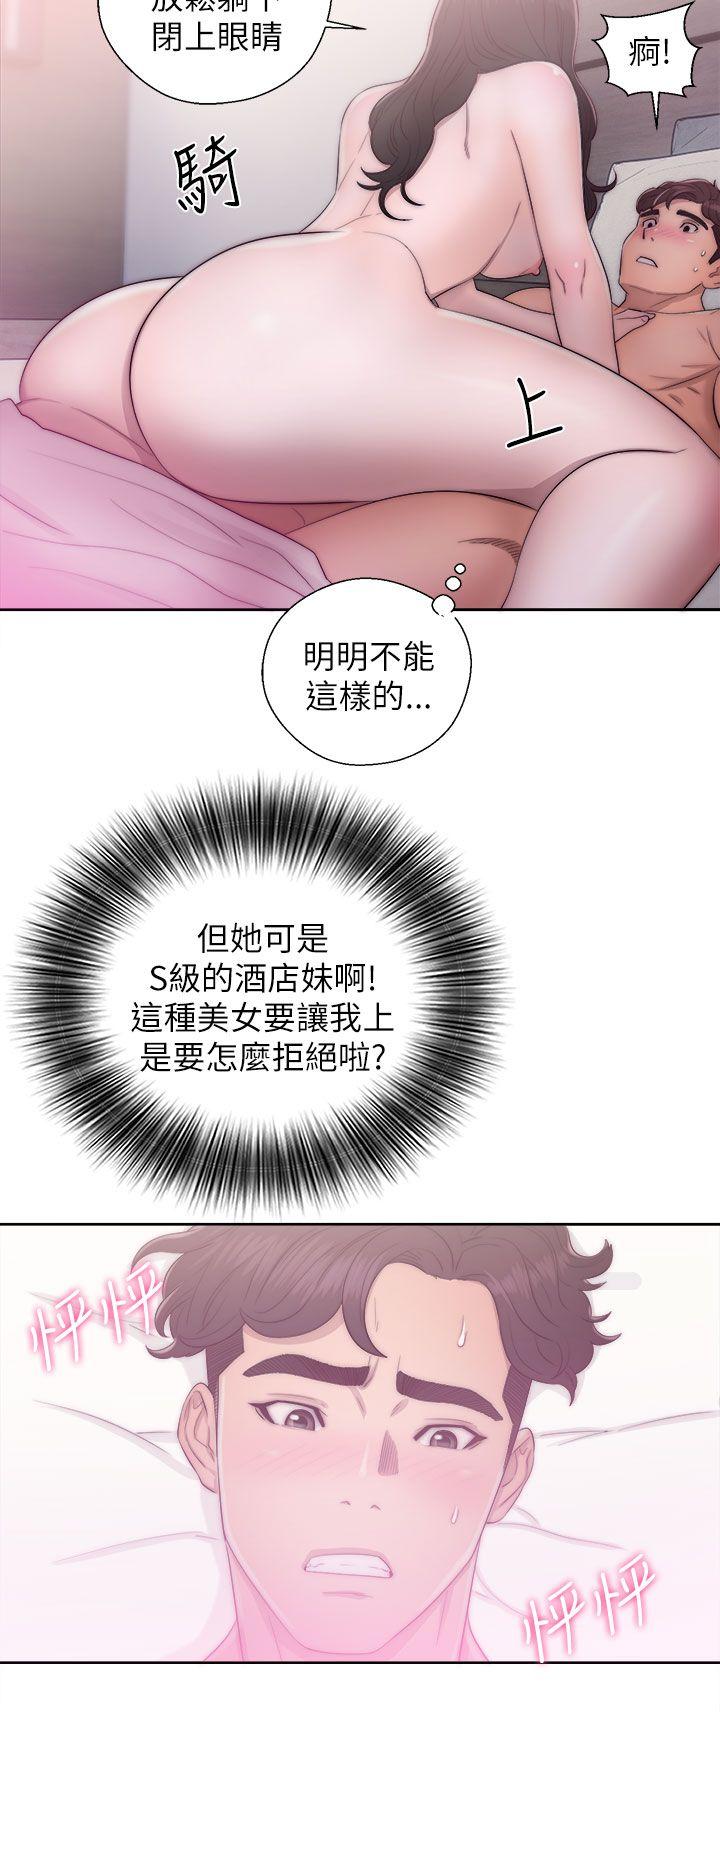 韩国污漫画 青春:逆齡小鮮肉 第16话 38